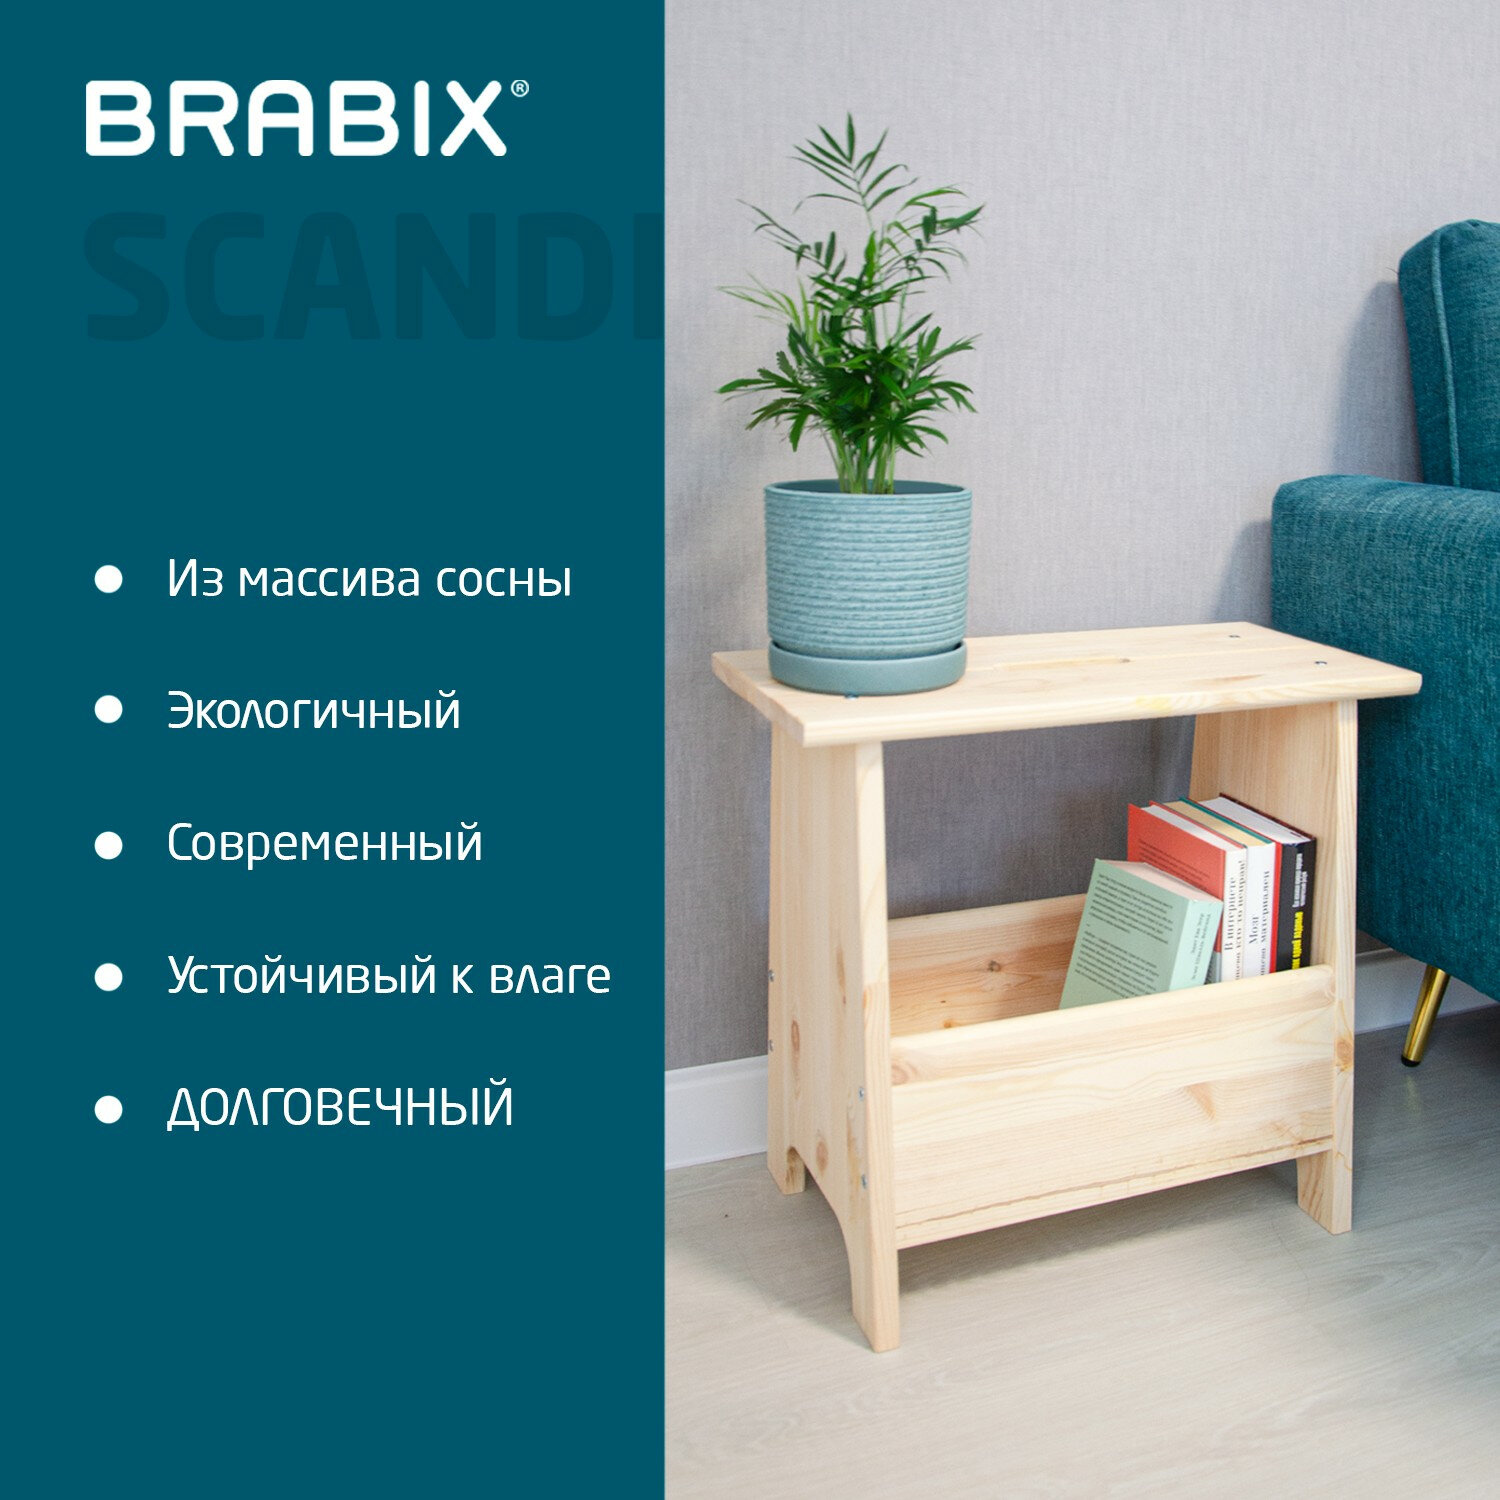 Brabix  BRABIX 641888